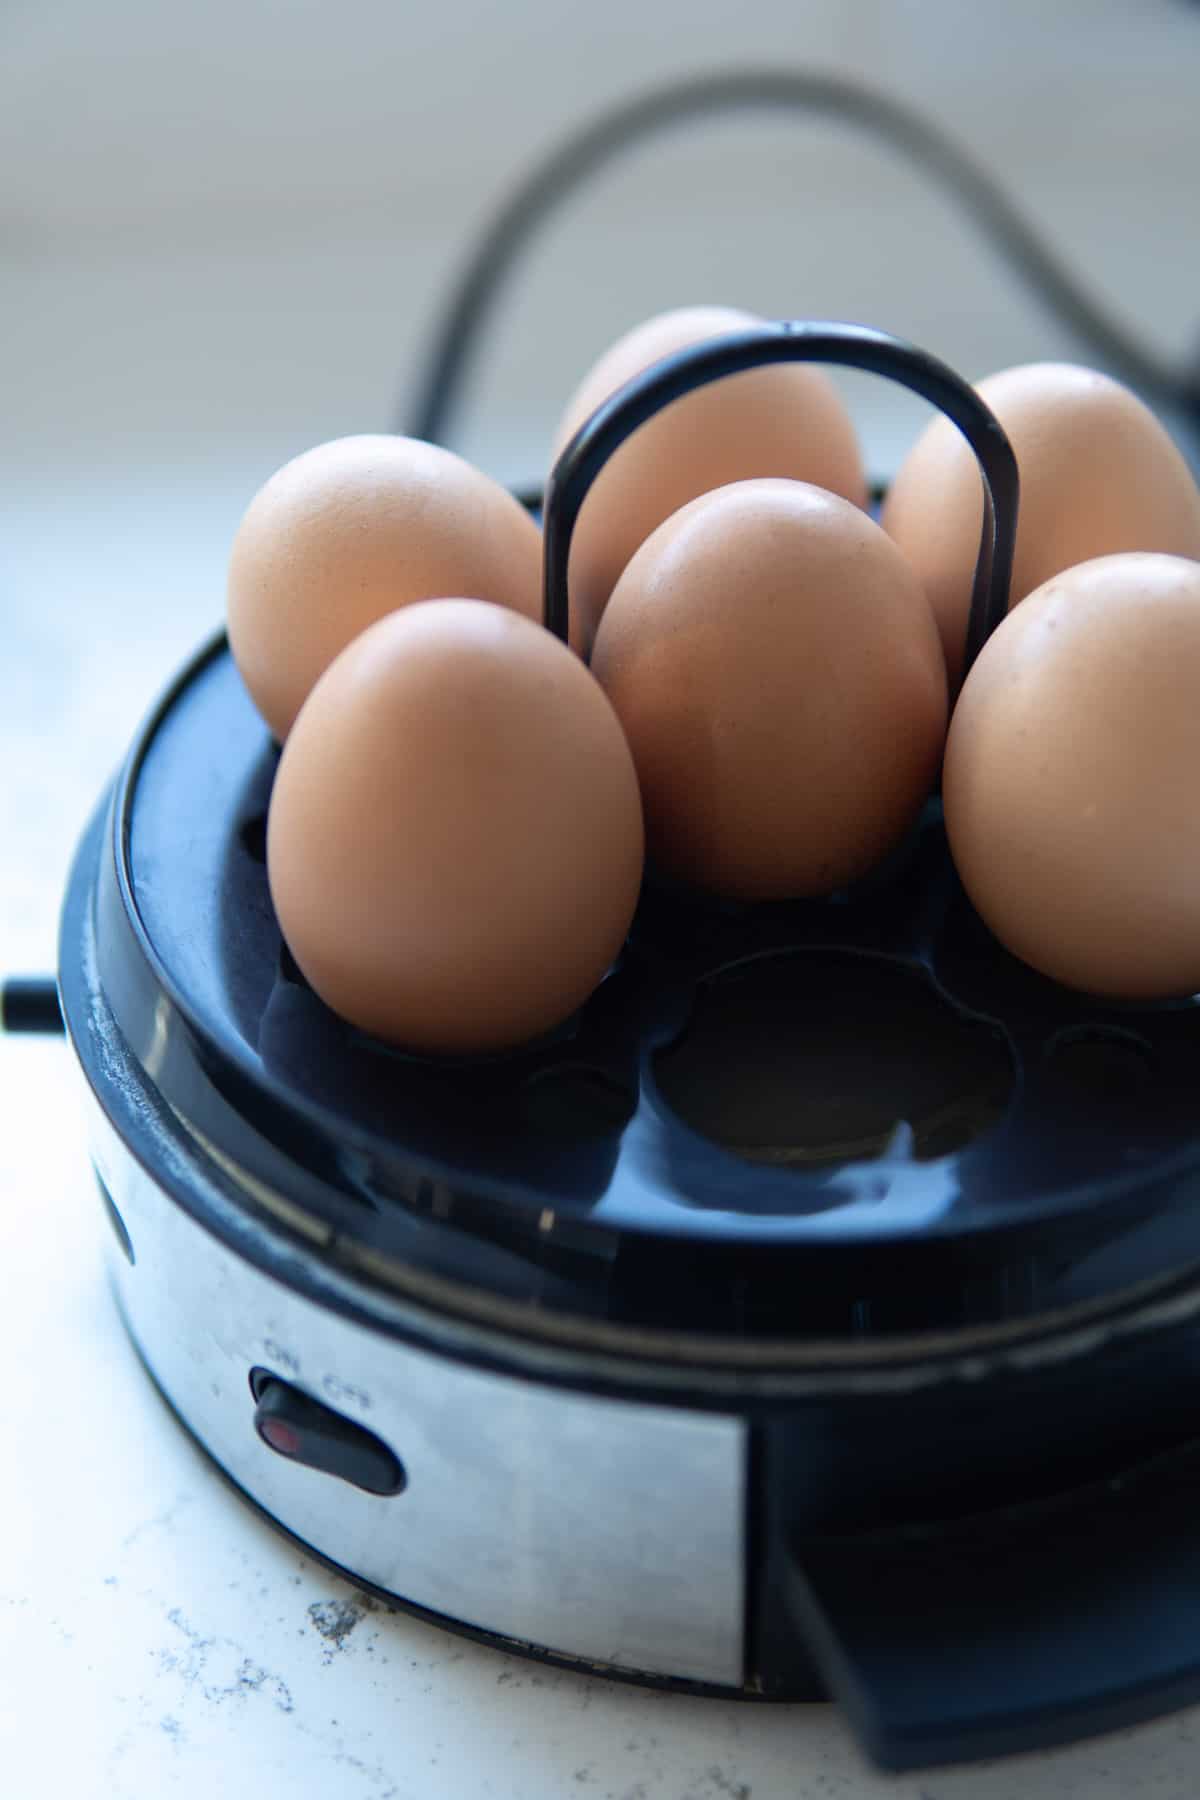 Eggs in an egg maker.